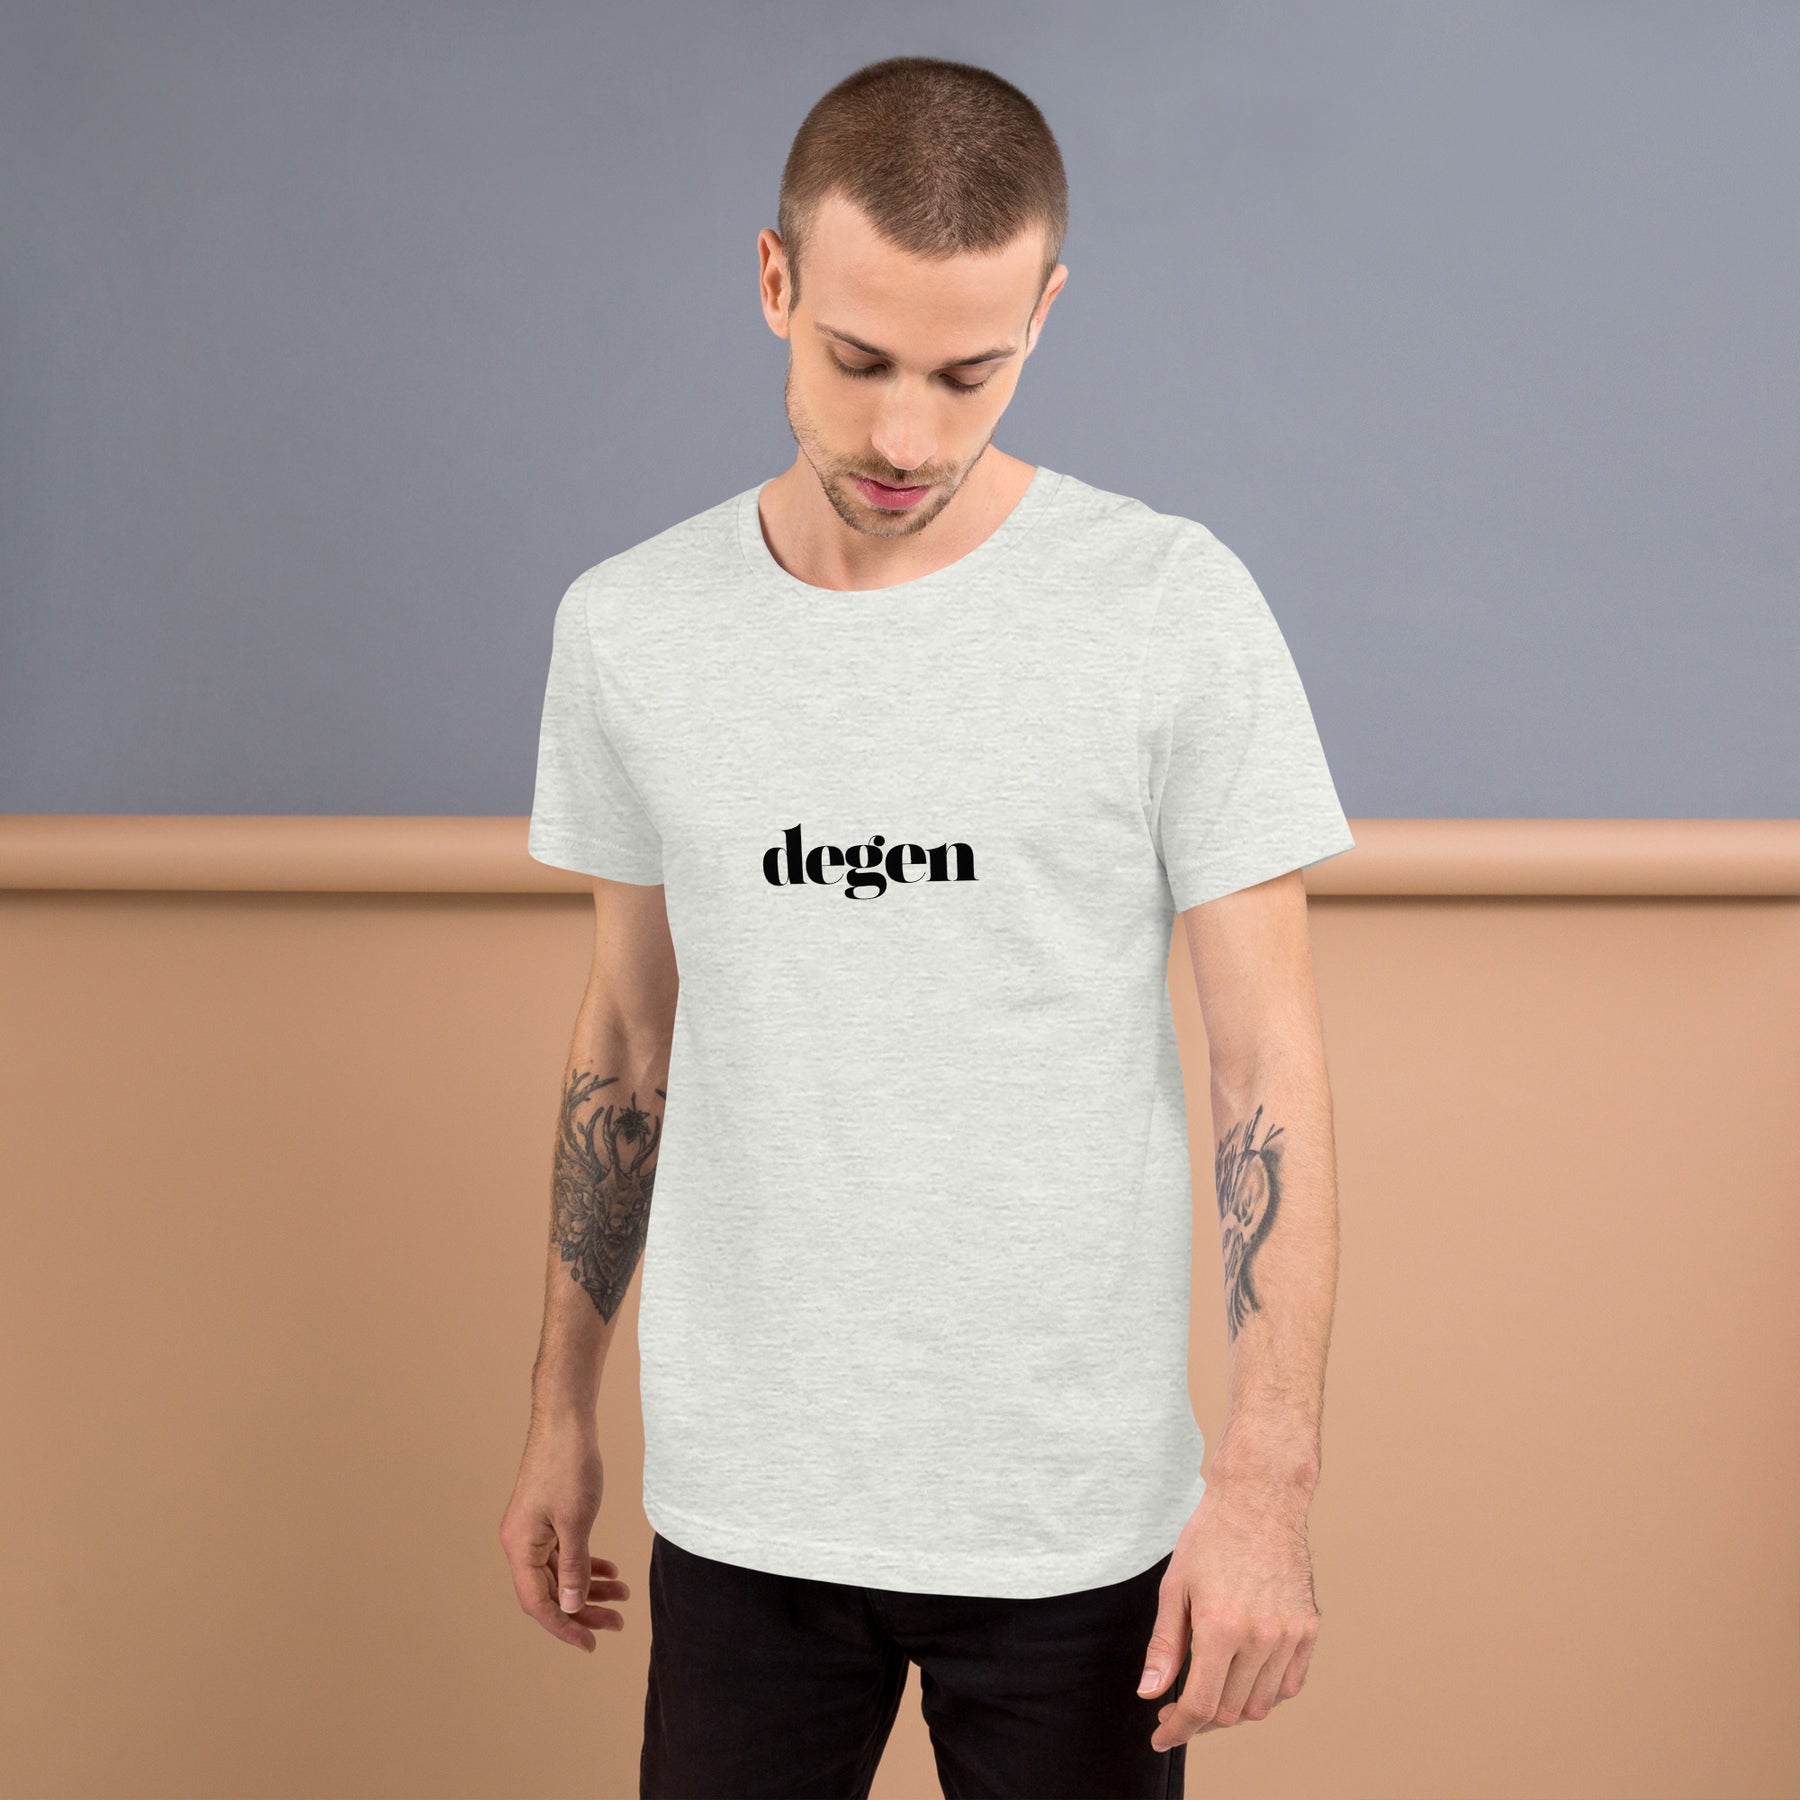 Degen | Unisex t-shirt